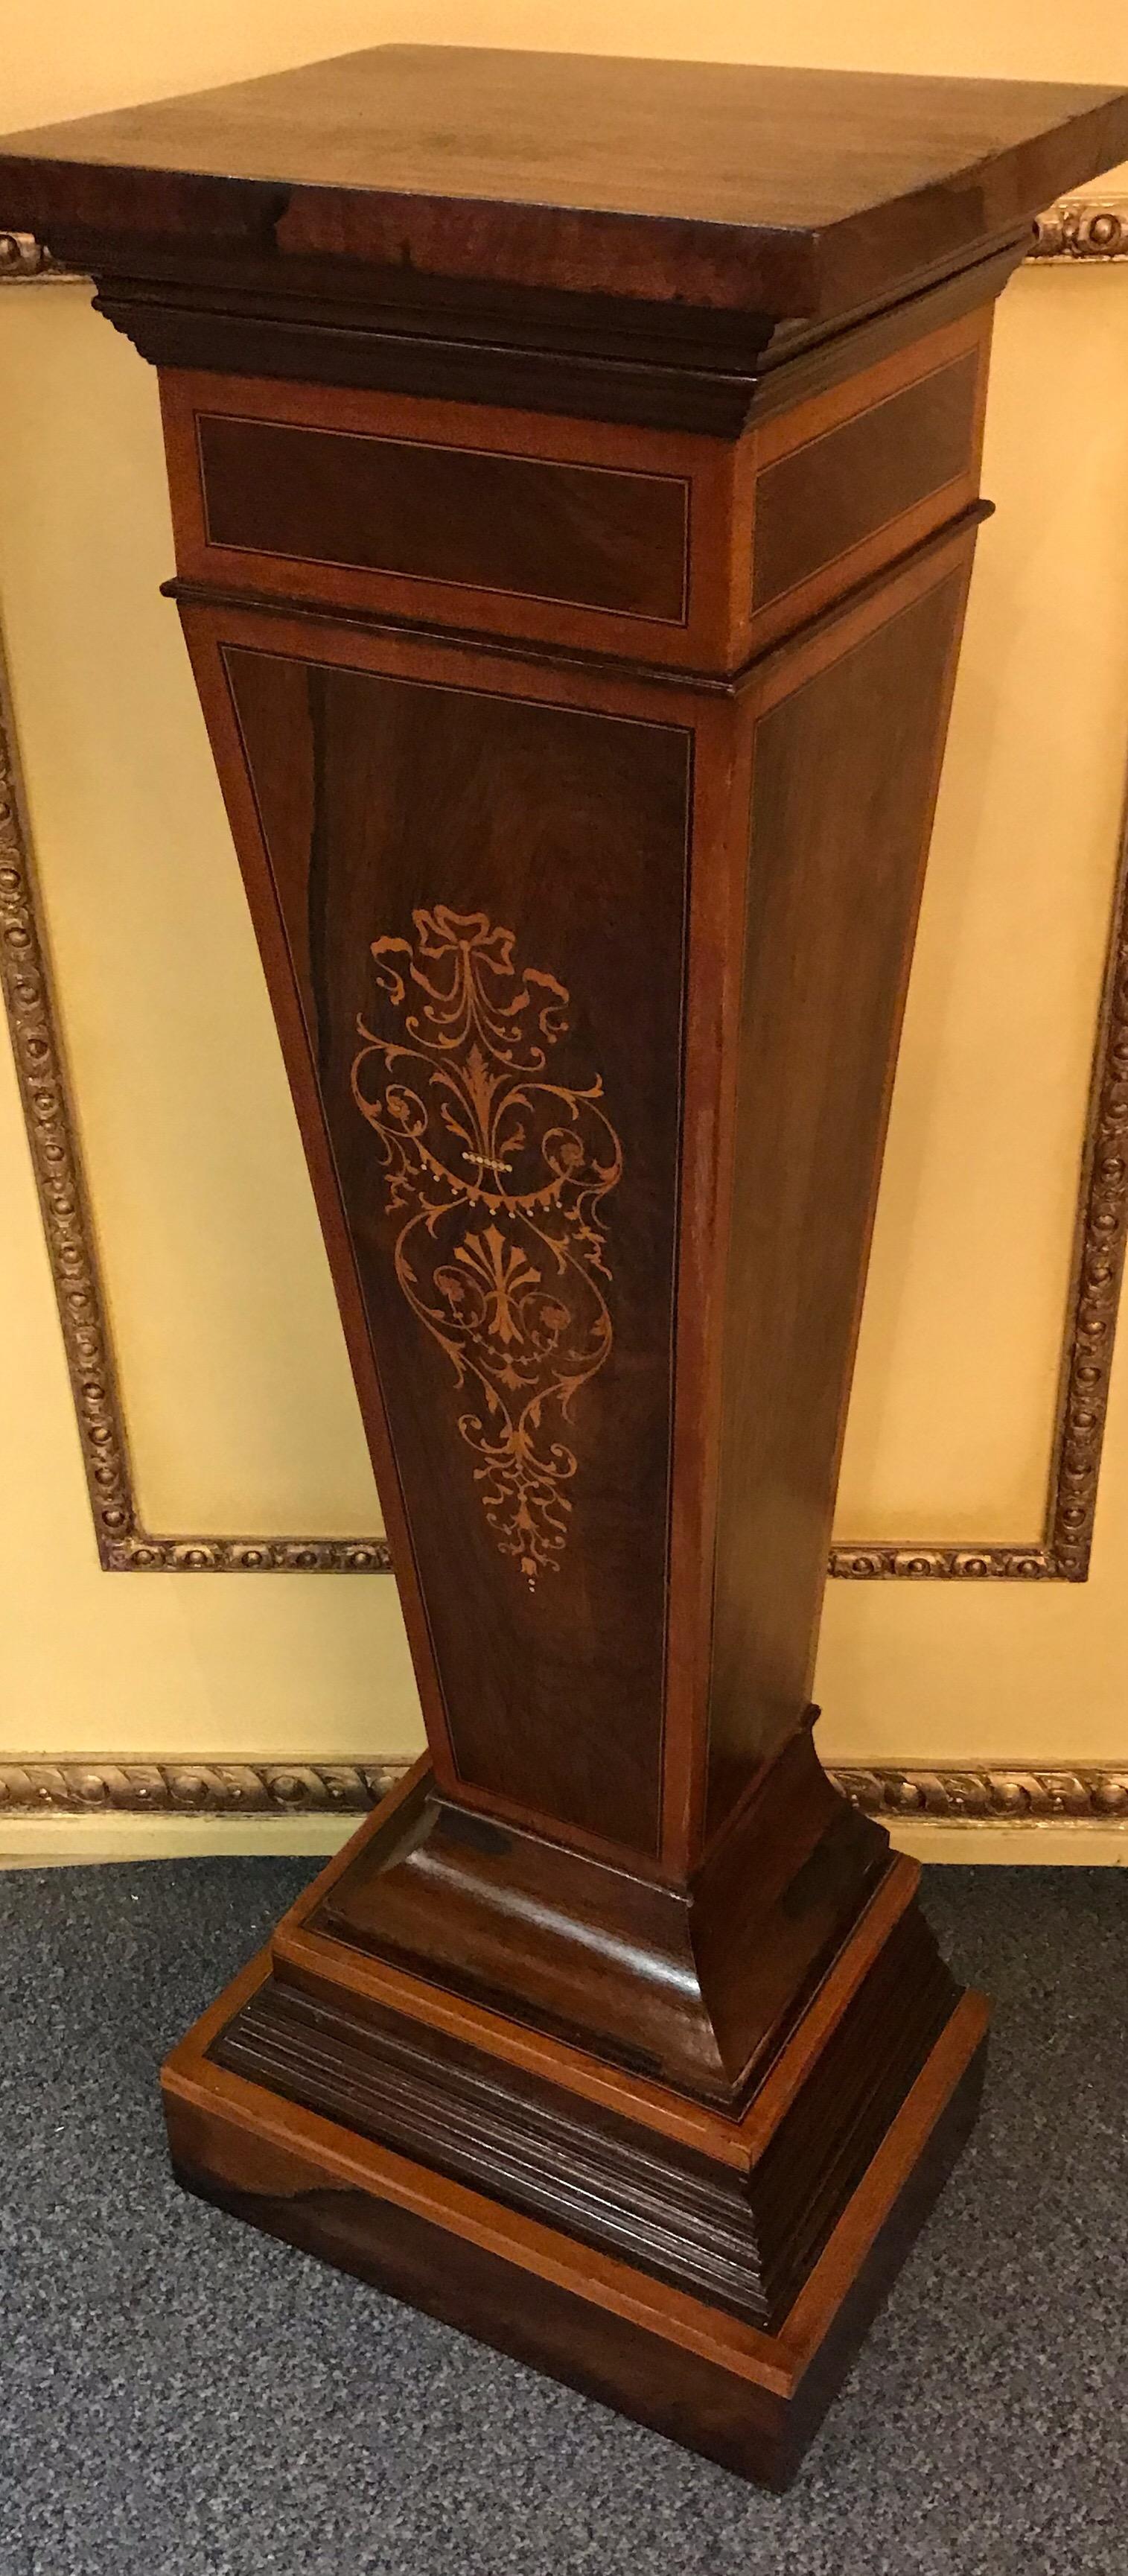 Einzigartiger englischer Säulensockel, viktorianisch. Massivholz mit Tulpenfurnier und reichen Intarsienarbeiten.

Profilierter und abgestufter Fuß.

(K-).